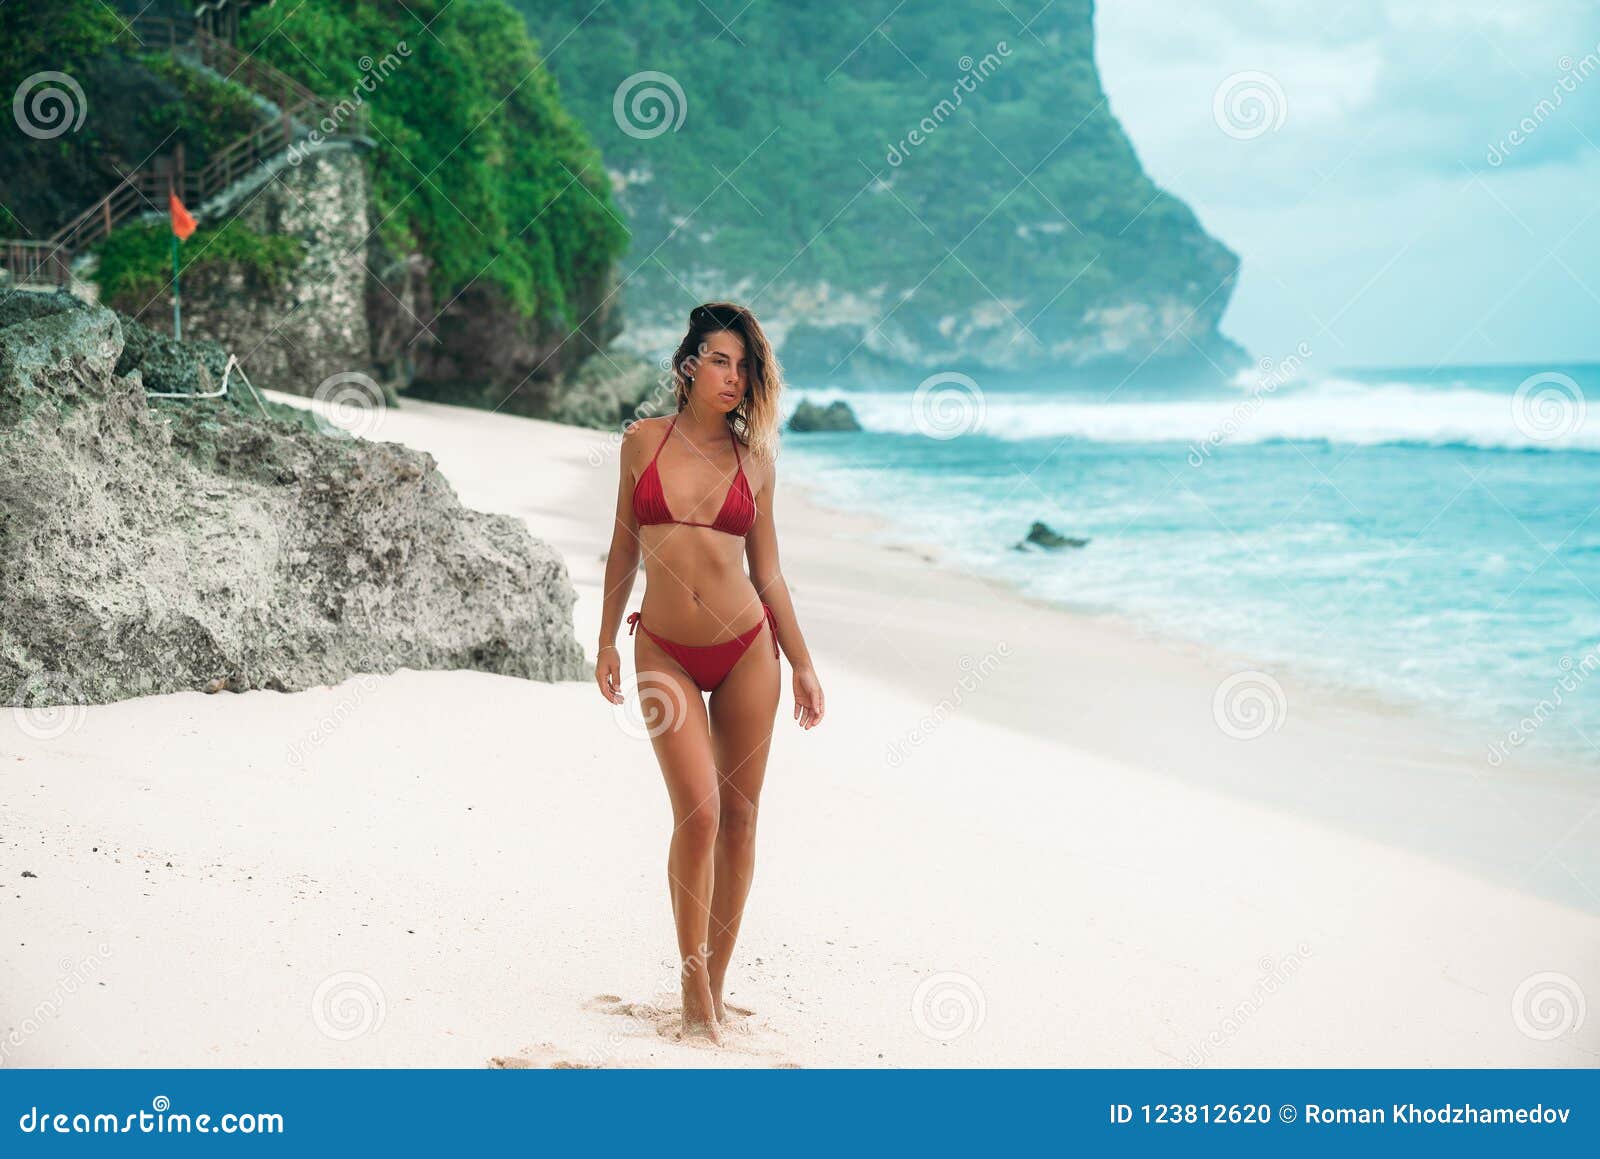 Изумительная Девушка На Пляже 